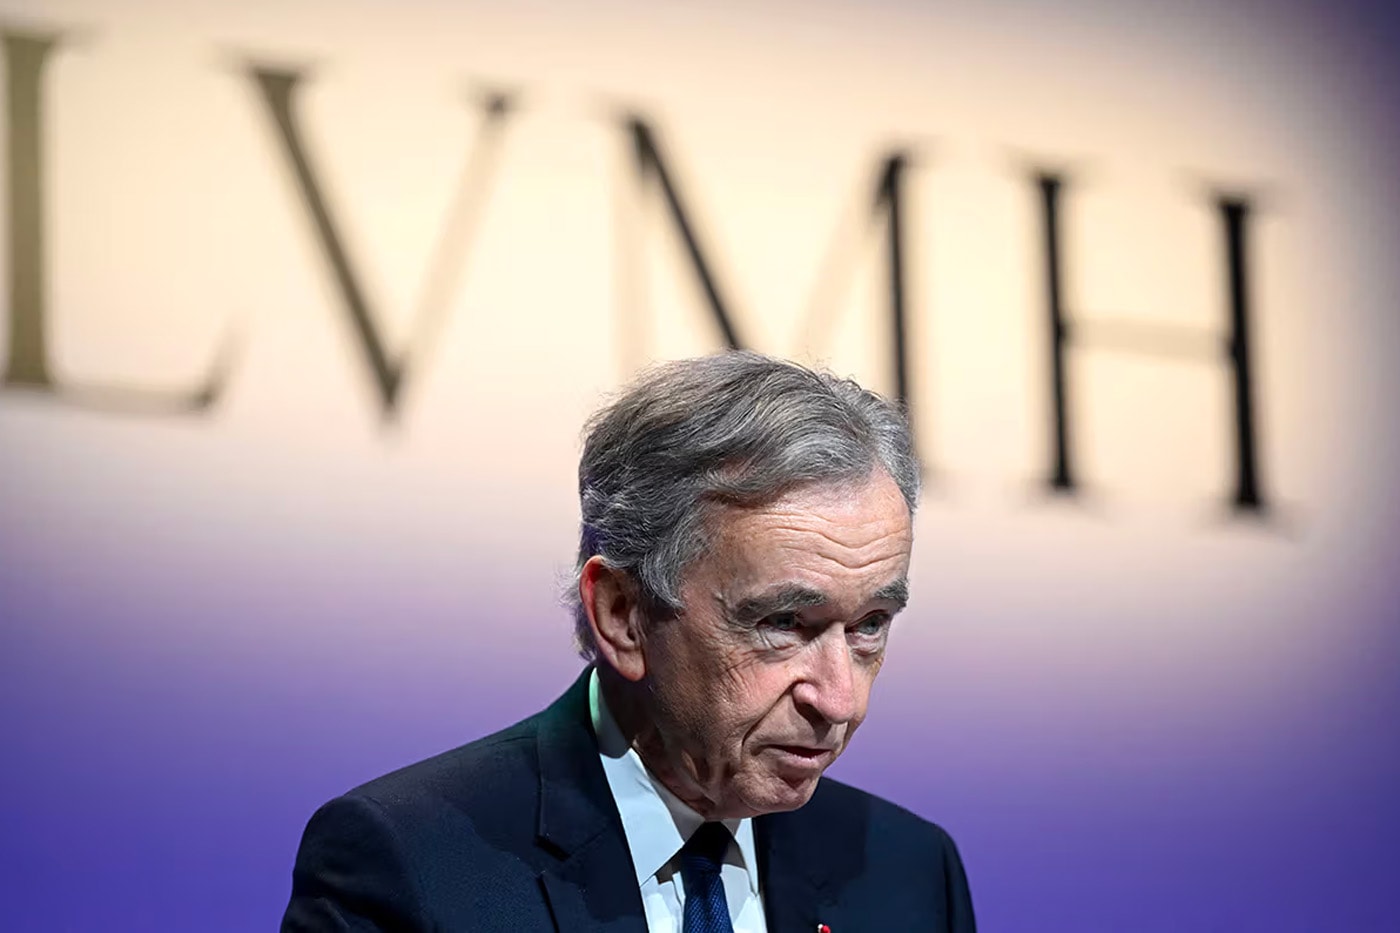 LVMH 总裁 Bernard Arnault 透露未来接班人与财富继承计划